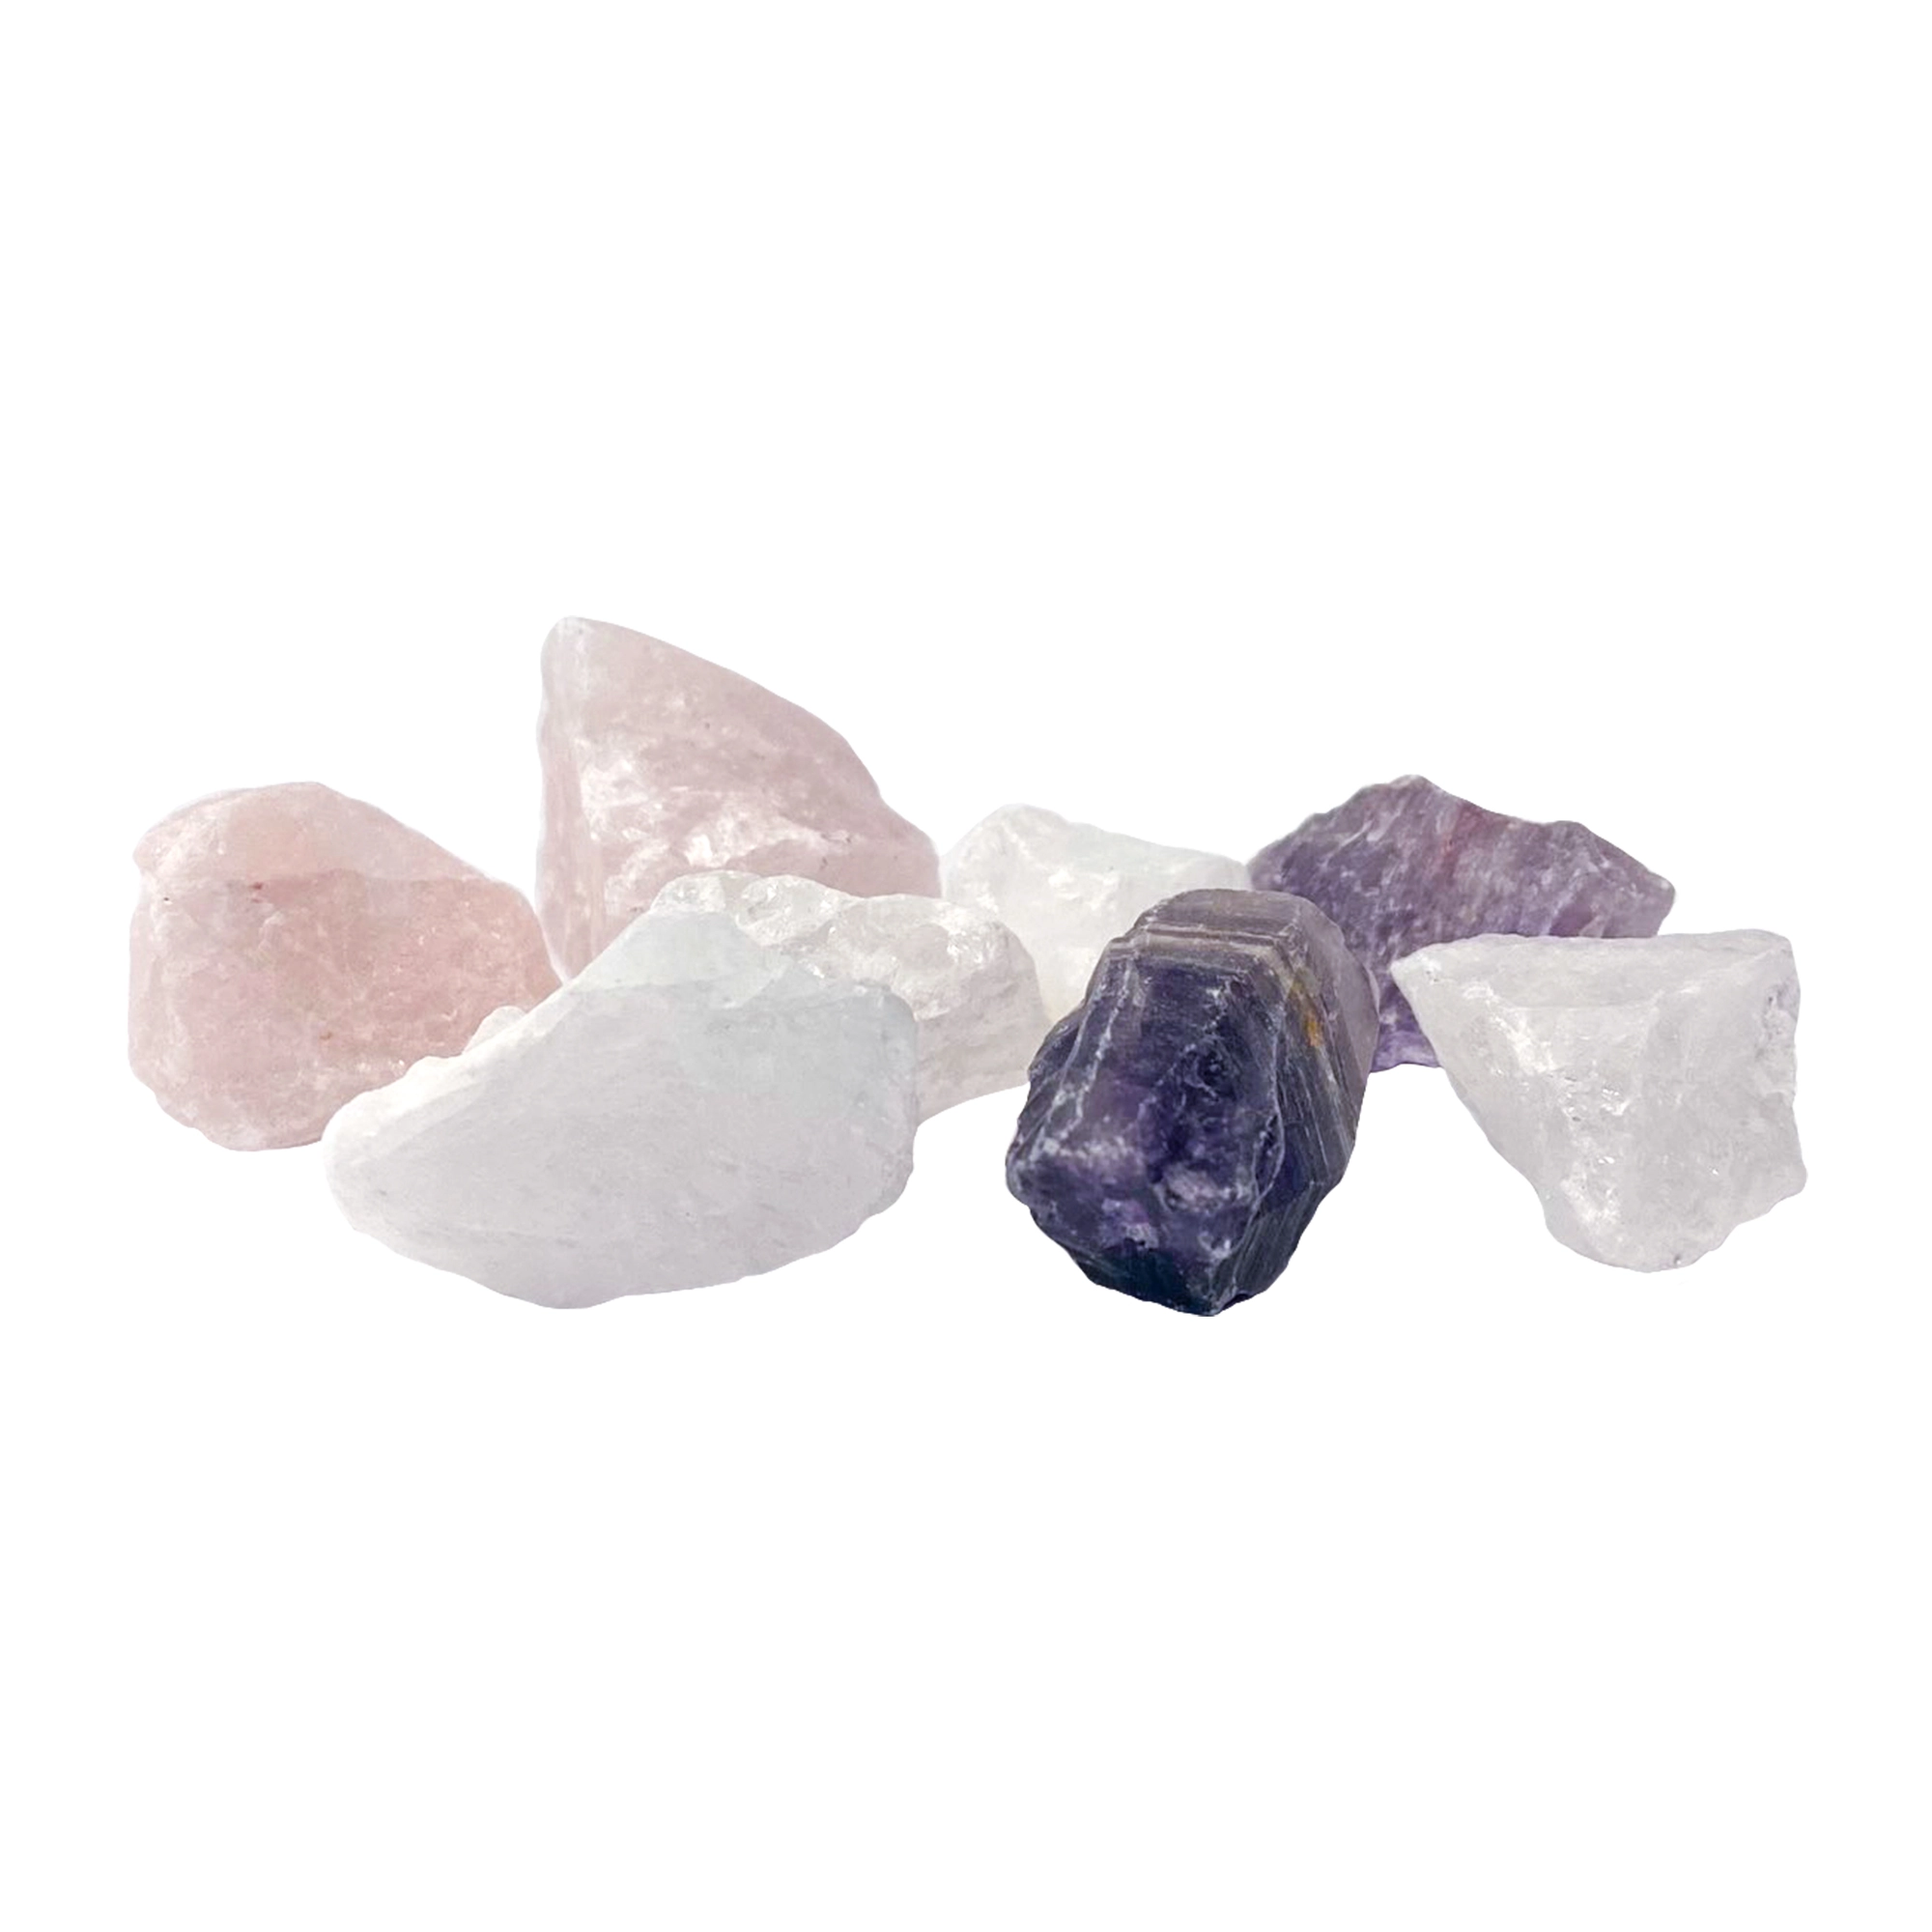 Kleines Wassersteine Set, bestehend aus mehreren kleinen Wassersteinen, wie Rosenquarz, Bergkristall und Amethyst, vor weißem Hintergrund. Die Steine sind weiß, rosa und lila.